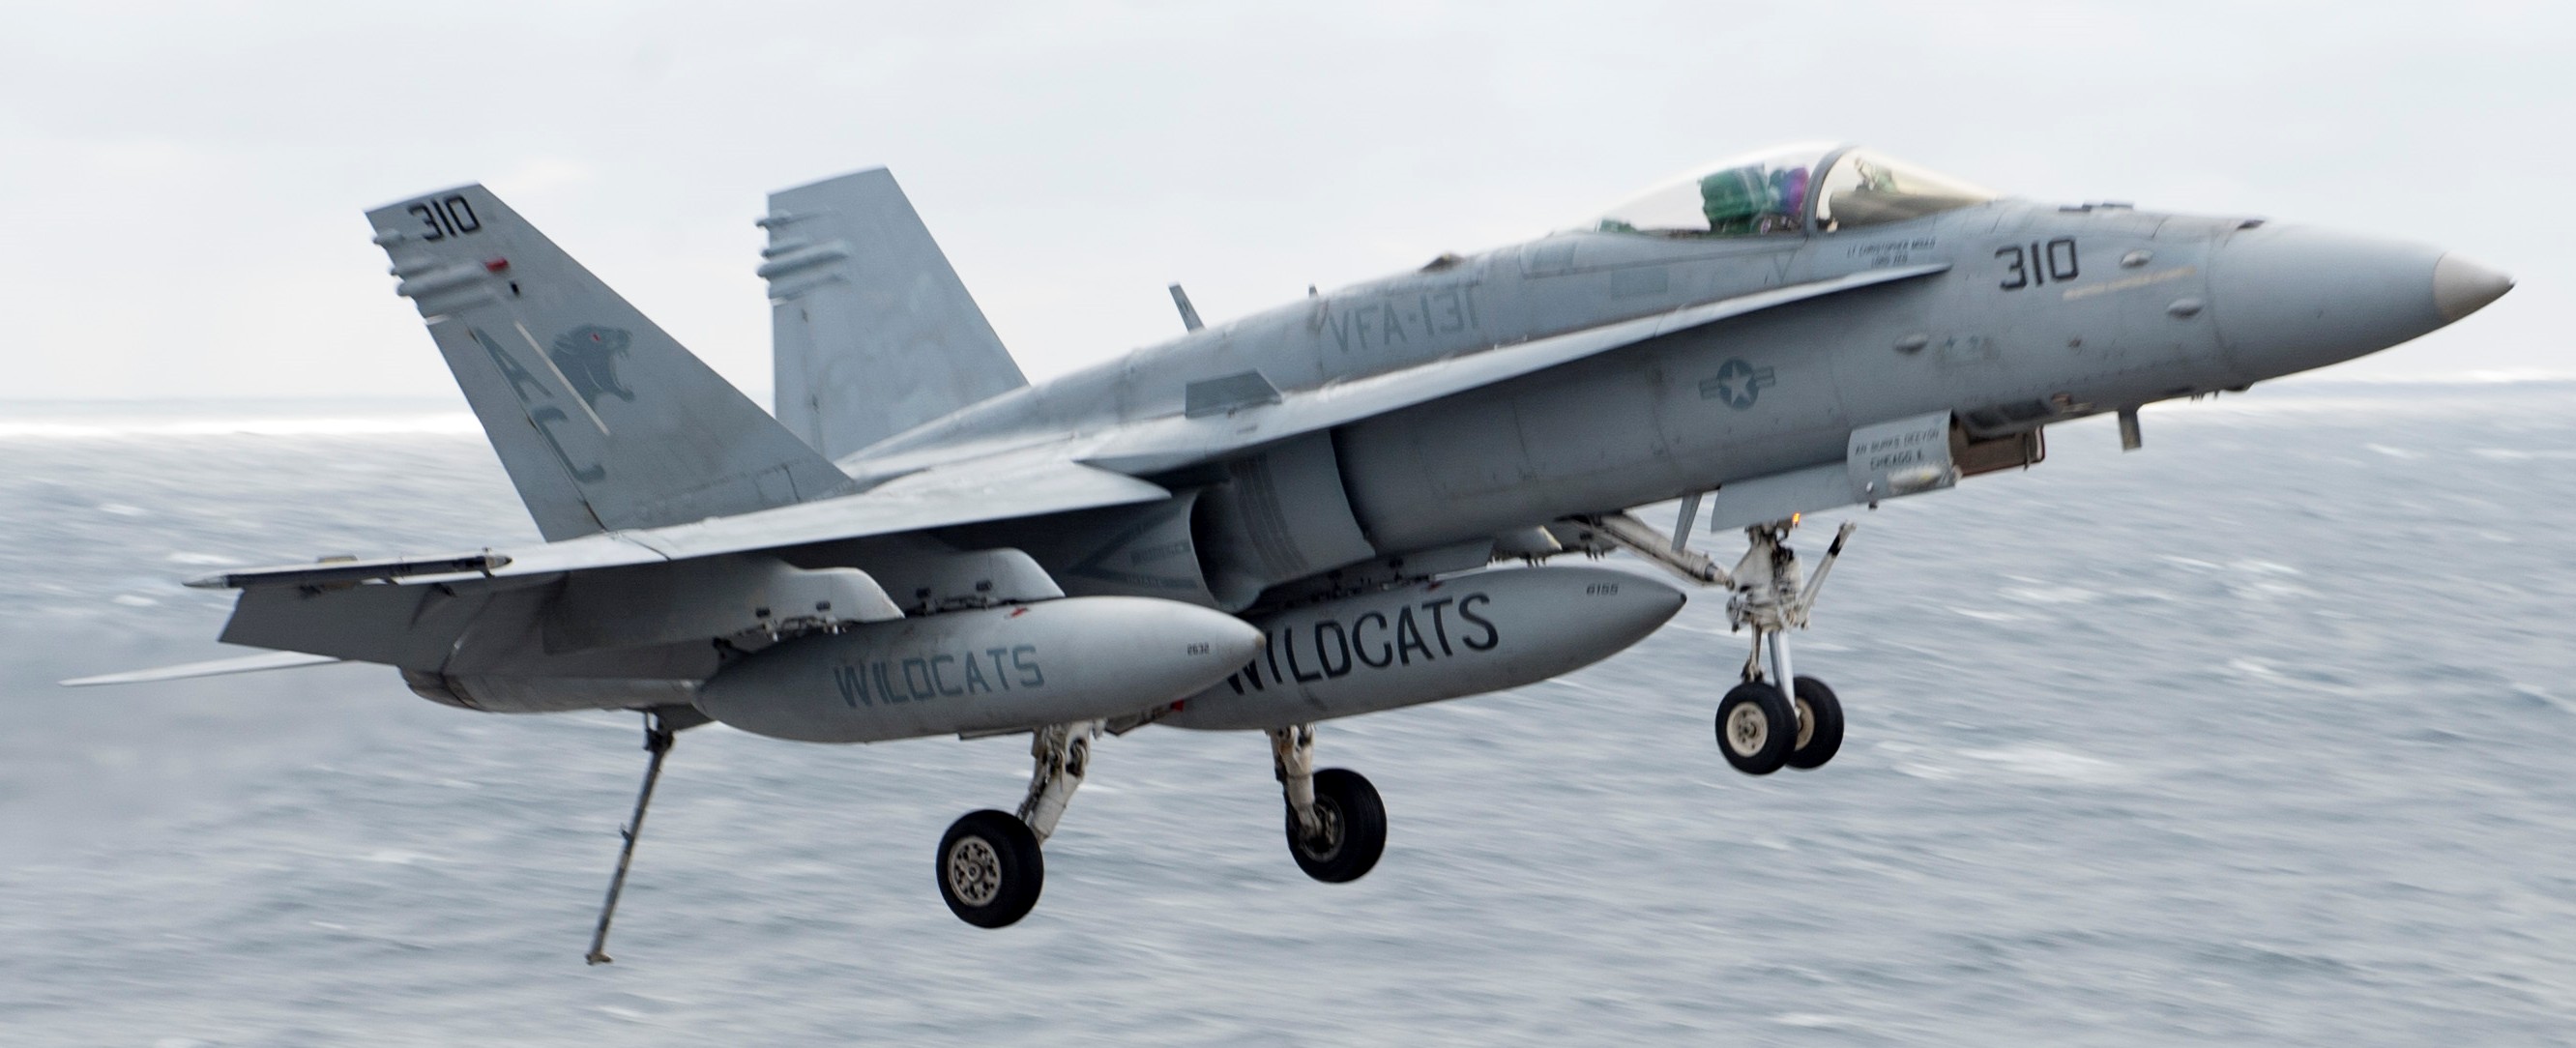 vfa-131 wildcats strike fighter squadron f/a-18c hornet cvw-3 uss dwight d. eisenhower cvn-69 2015 39